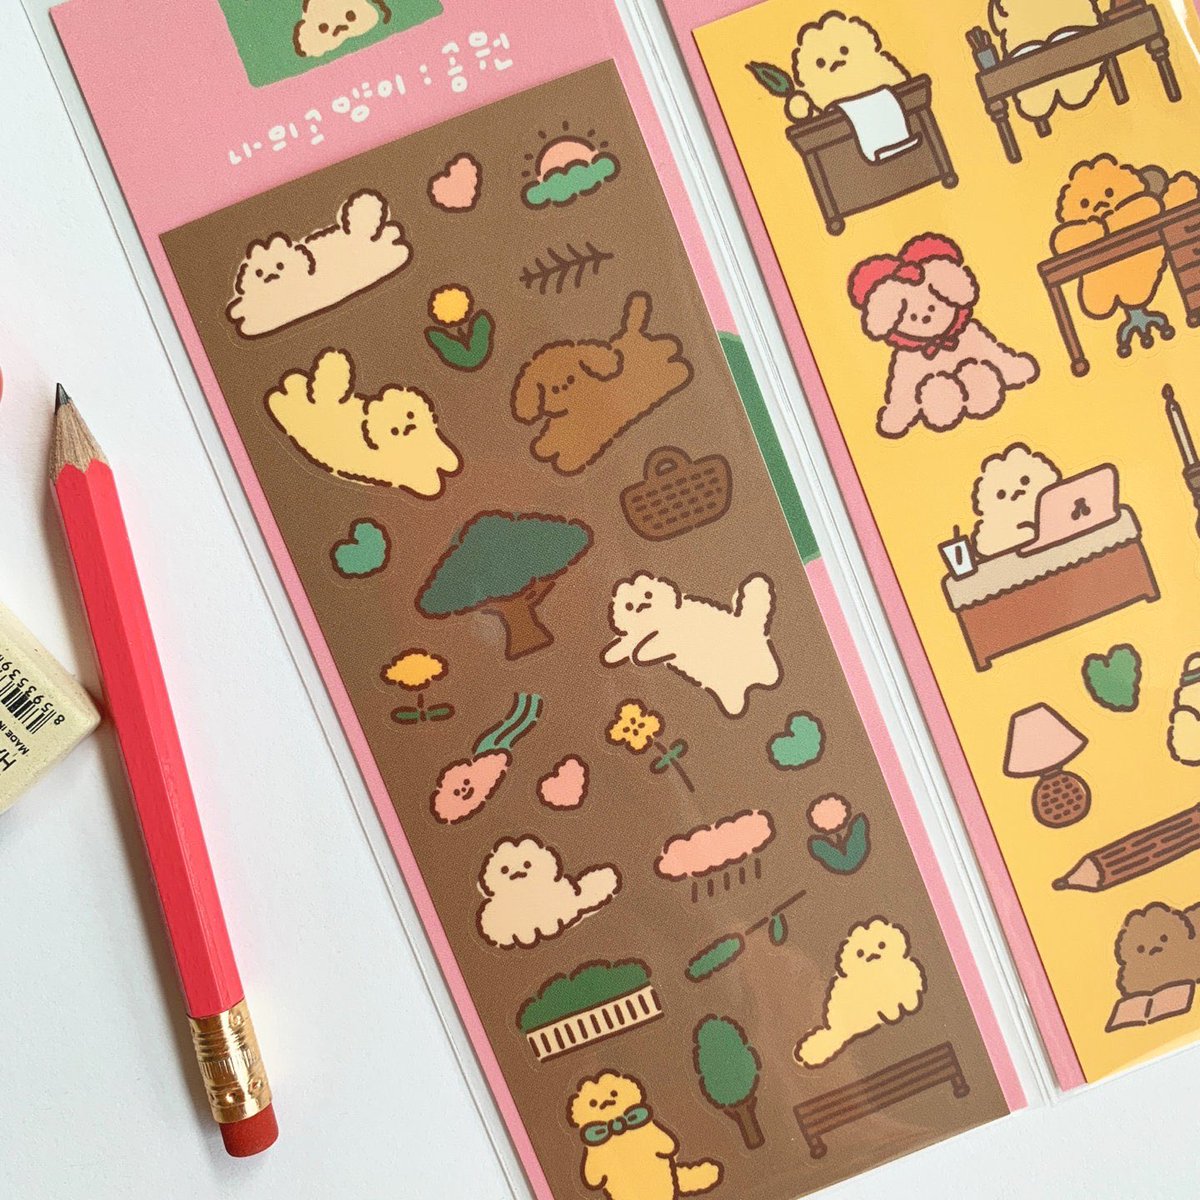 고양이빵팩 5 stickers, 2 postcards, 1 memo pad